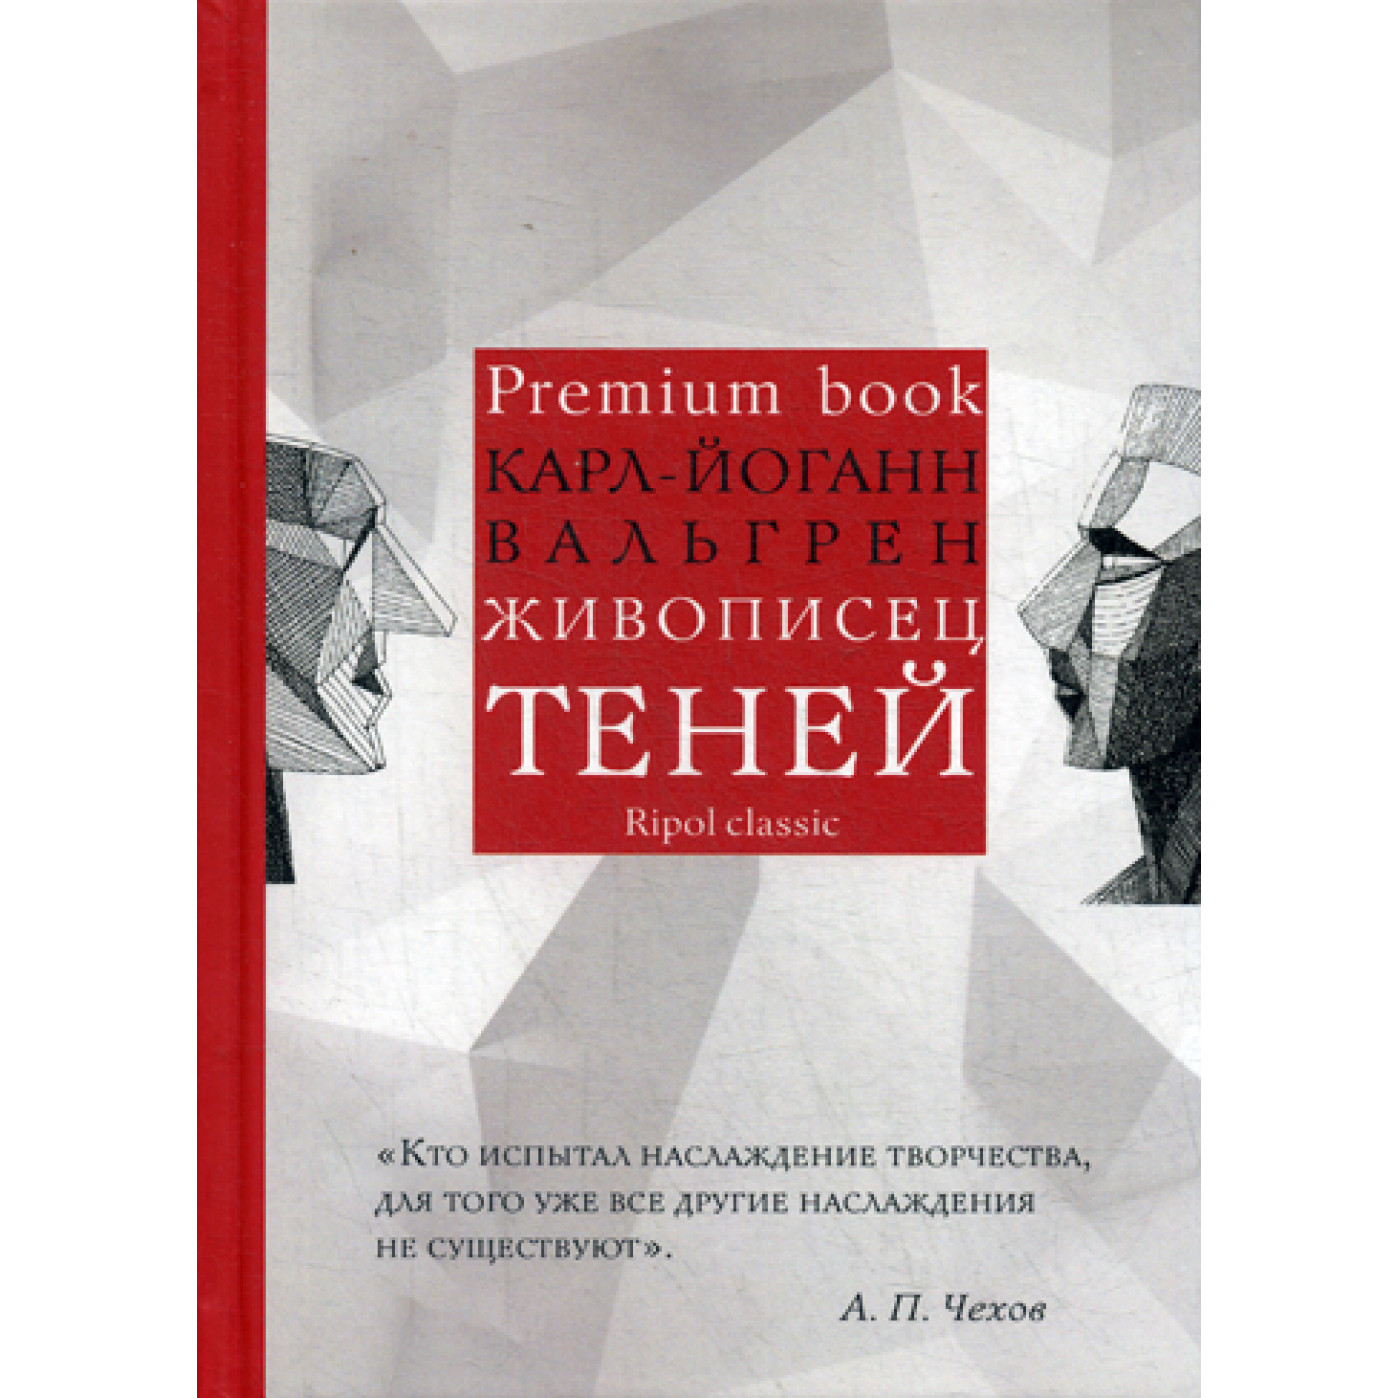 Живописец теней (Premium book). Вальгрен К.-Й.